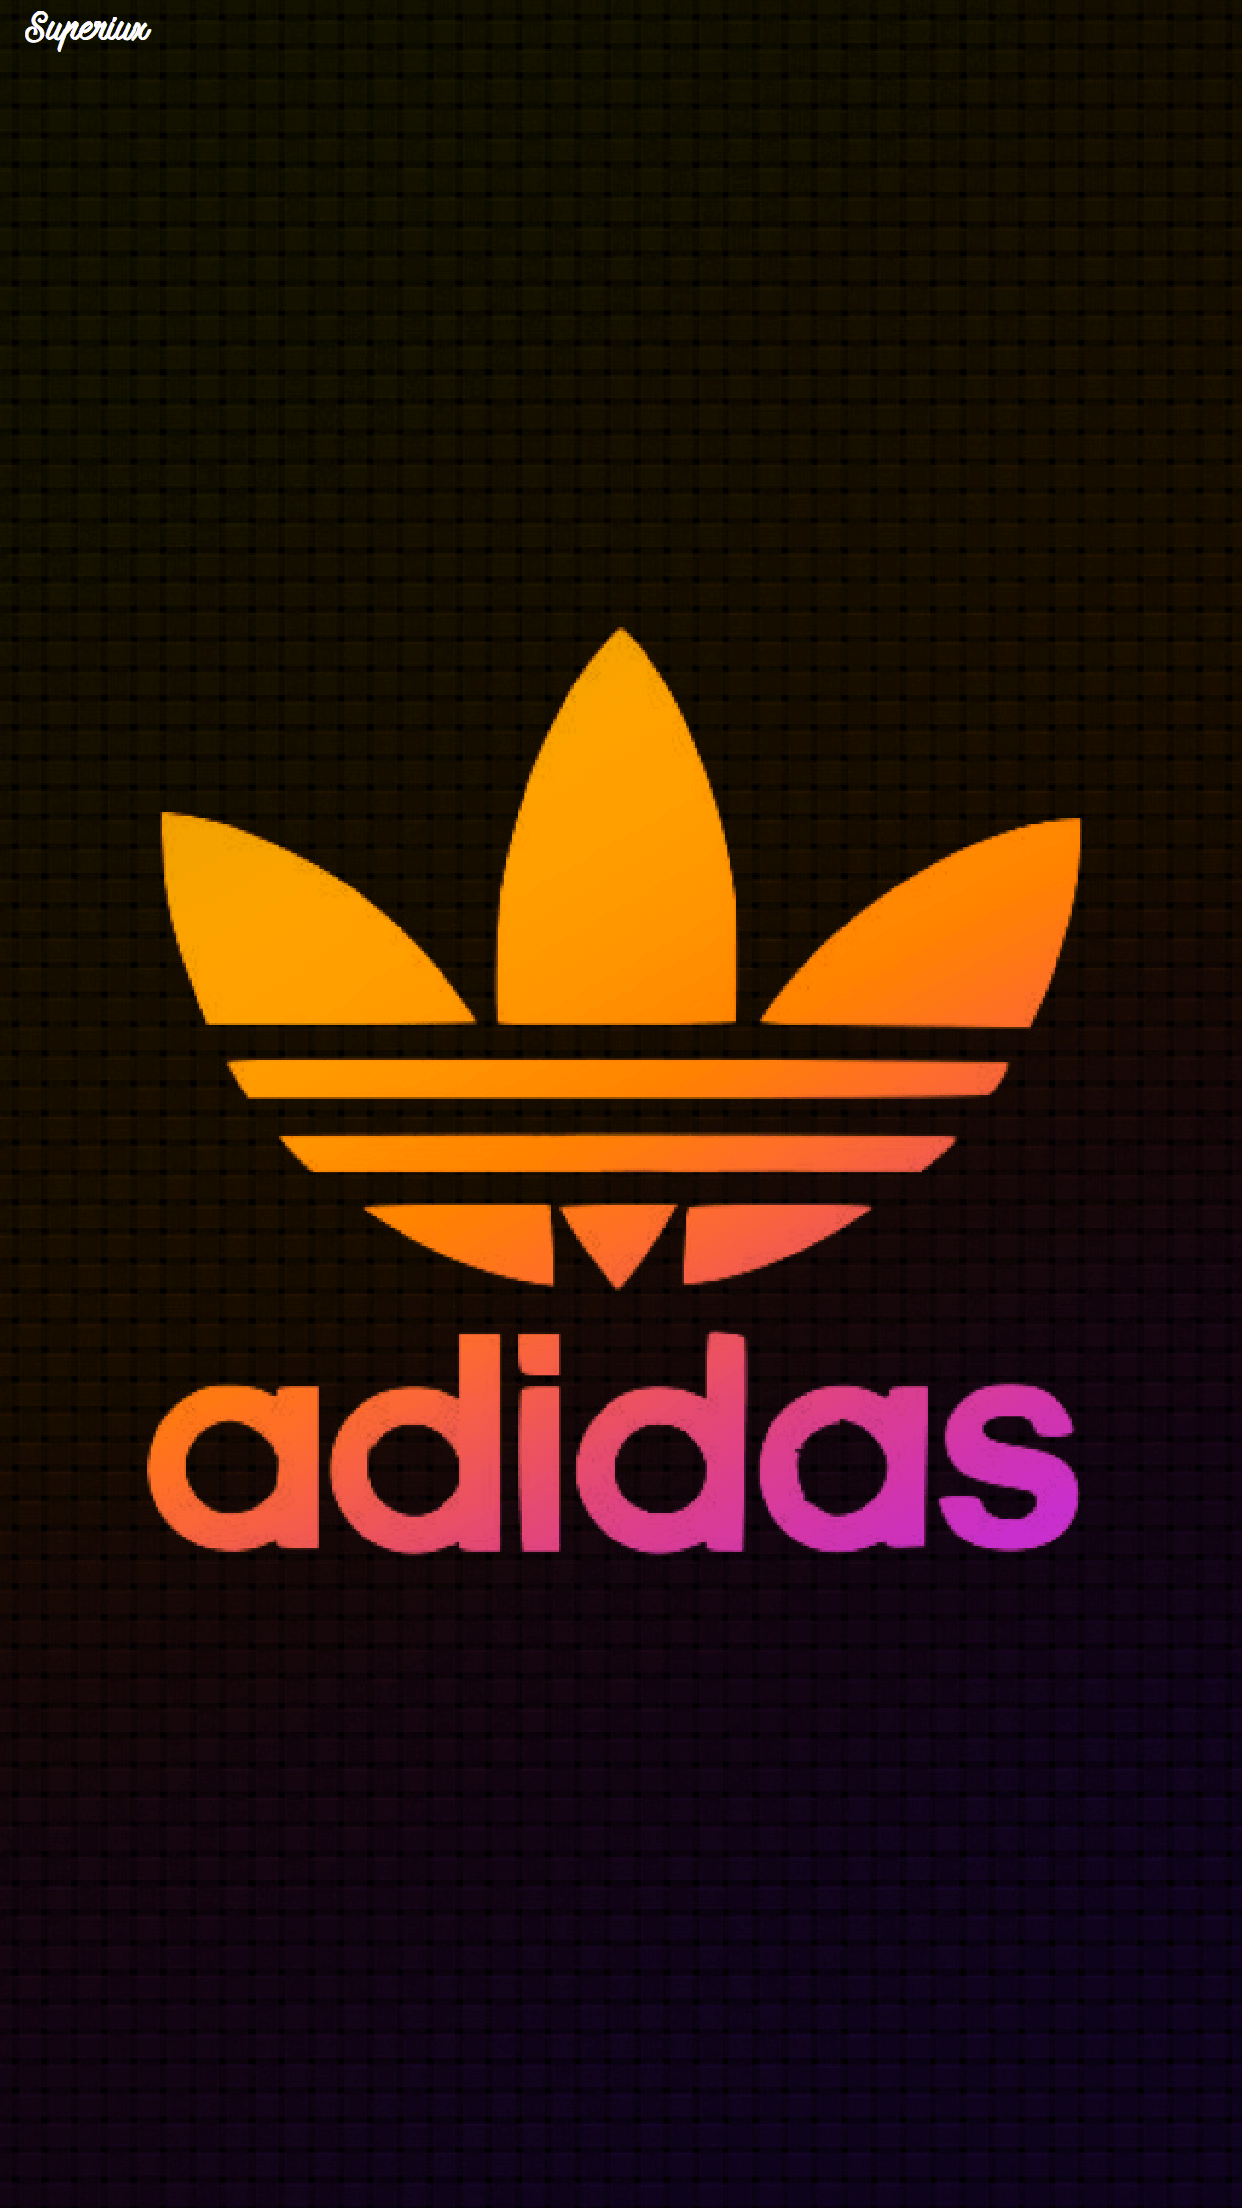 logos de adidas 2019